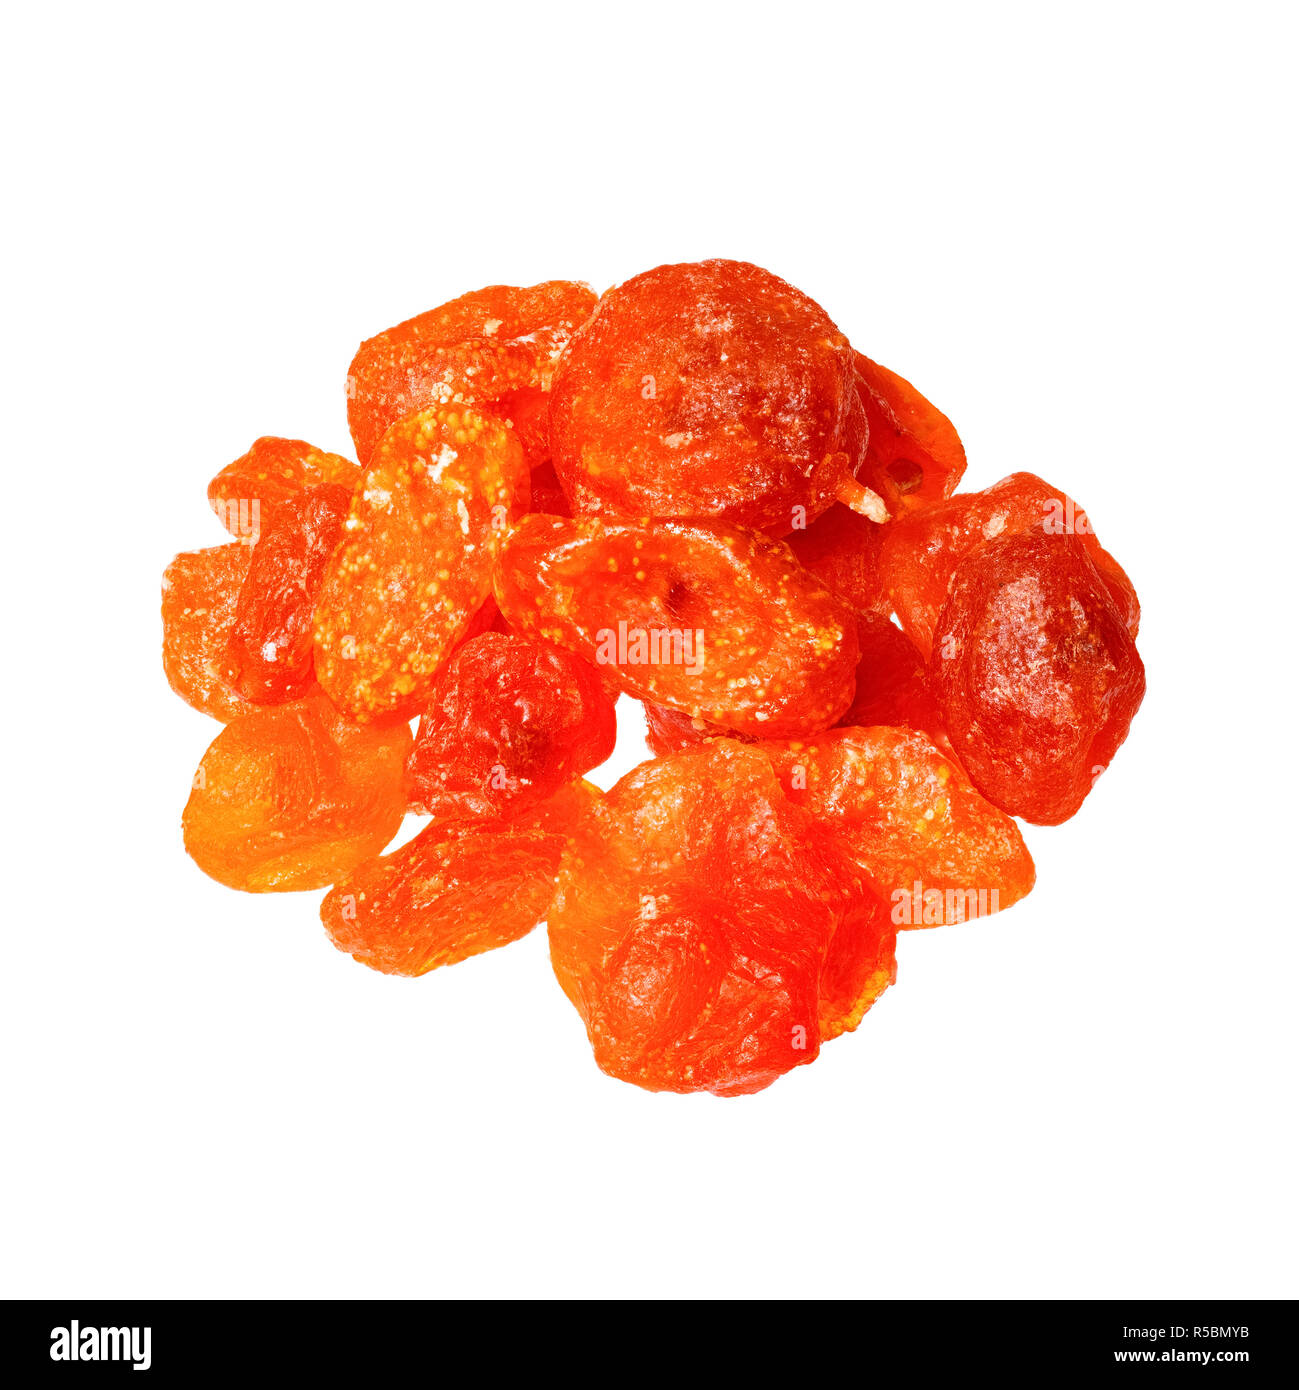 Dried kumquat close up isolated on white background. Stock Photo